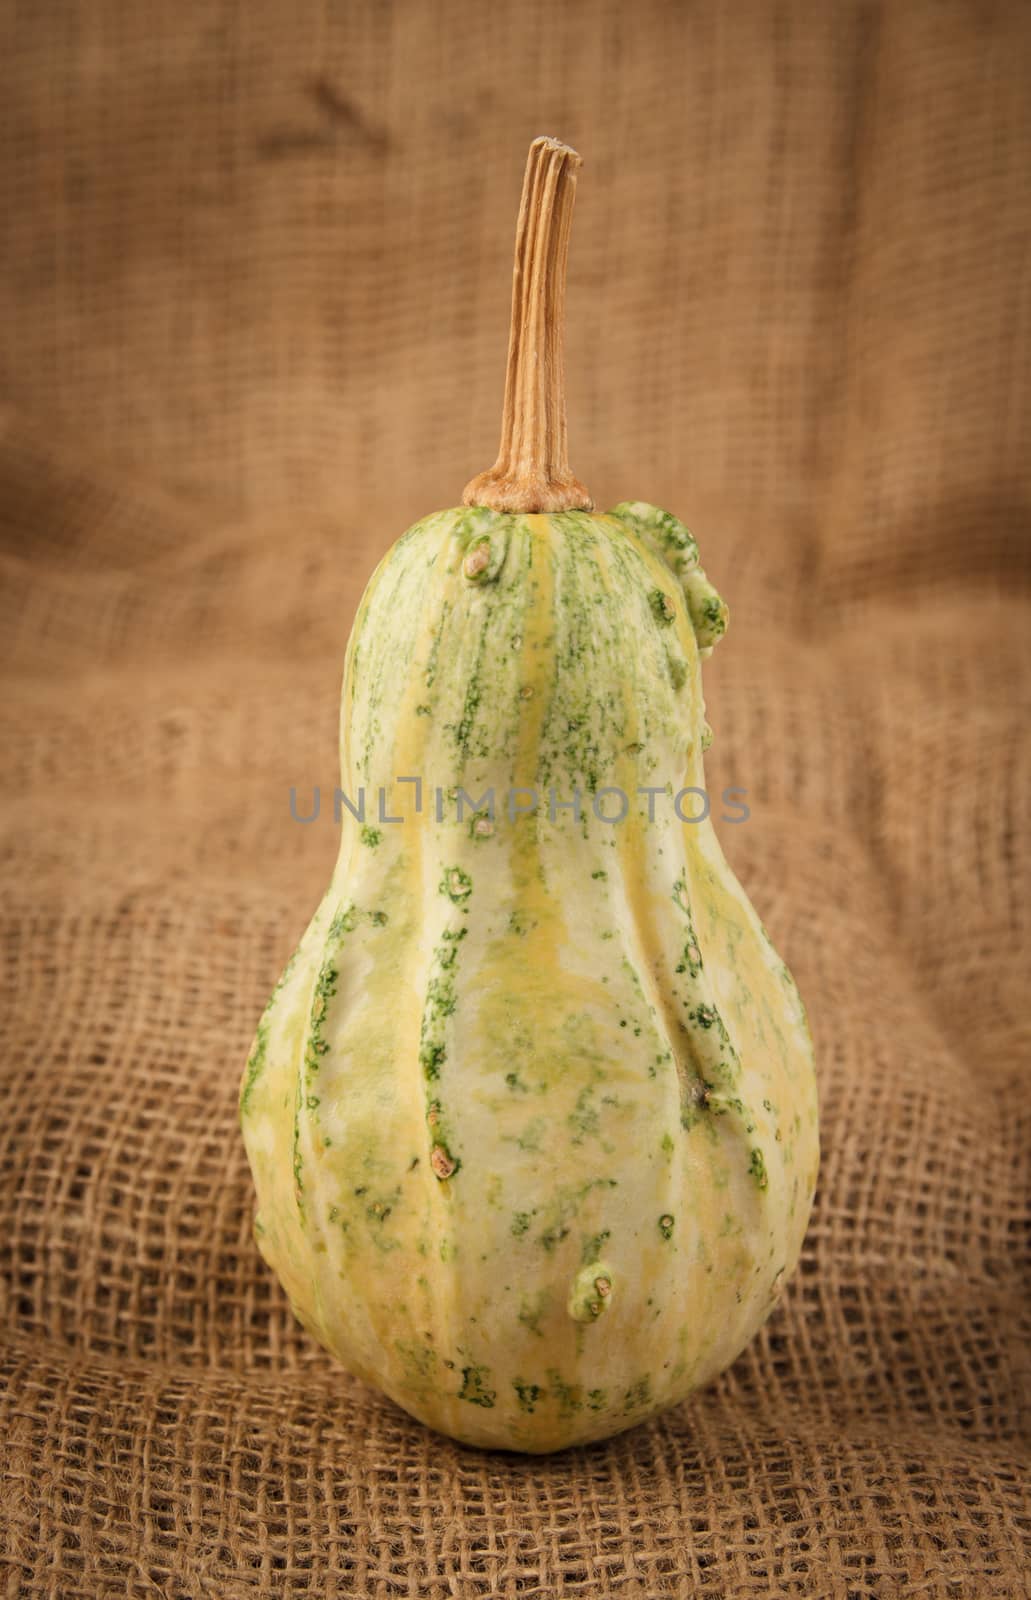 ornamental gourd by goghy73